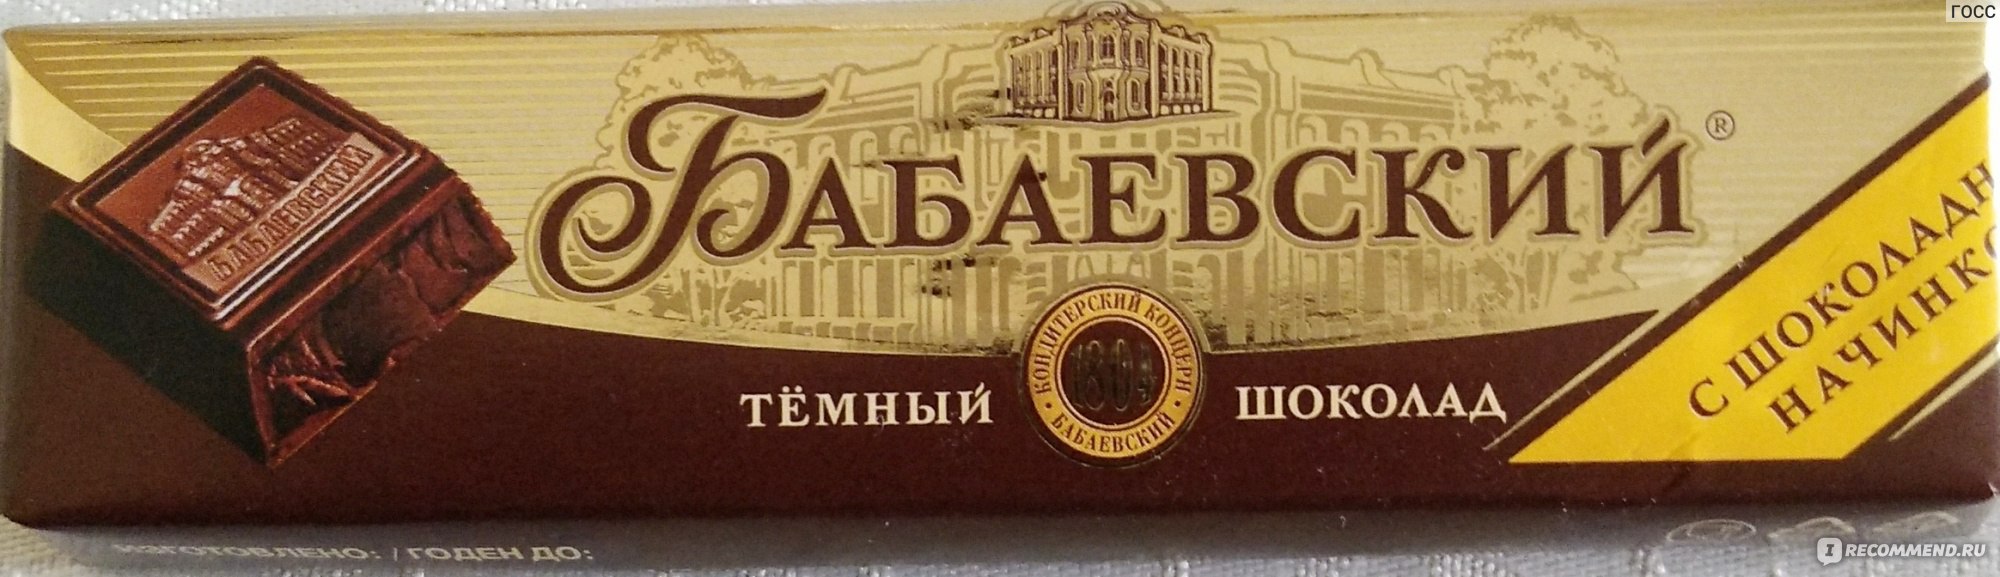 Бабаевский шоколад с помадно-сливочной начинкой